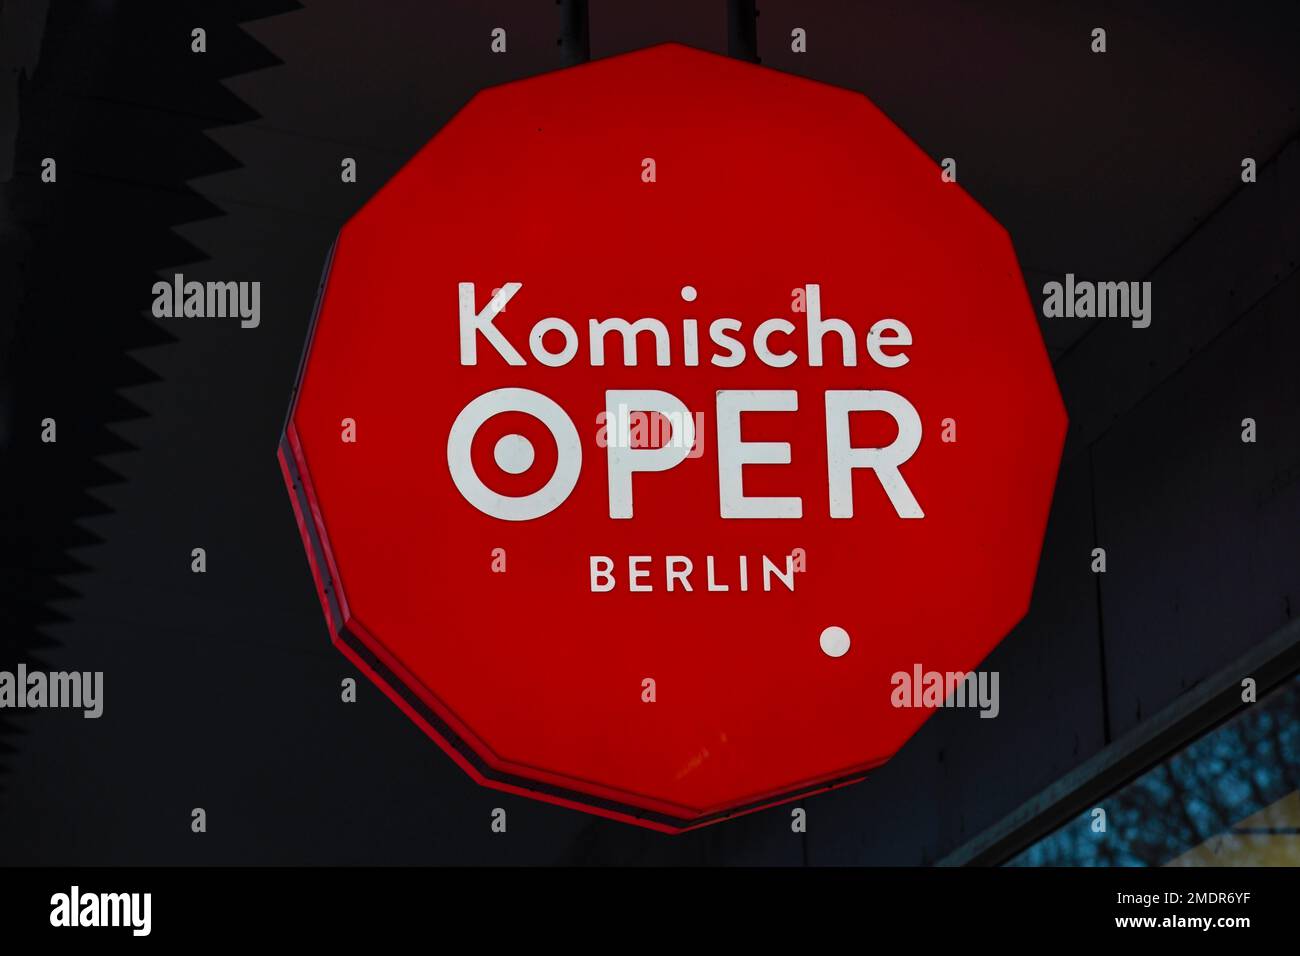 Illuminated advertising, Komische Oper, Behrenstrasse, Mitte, Berlin, Germany Stock Photo